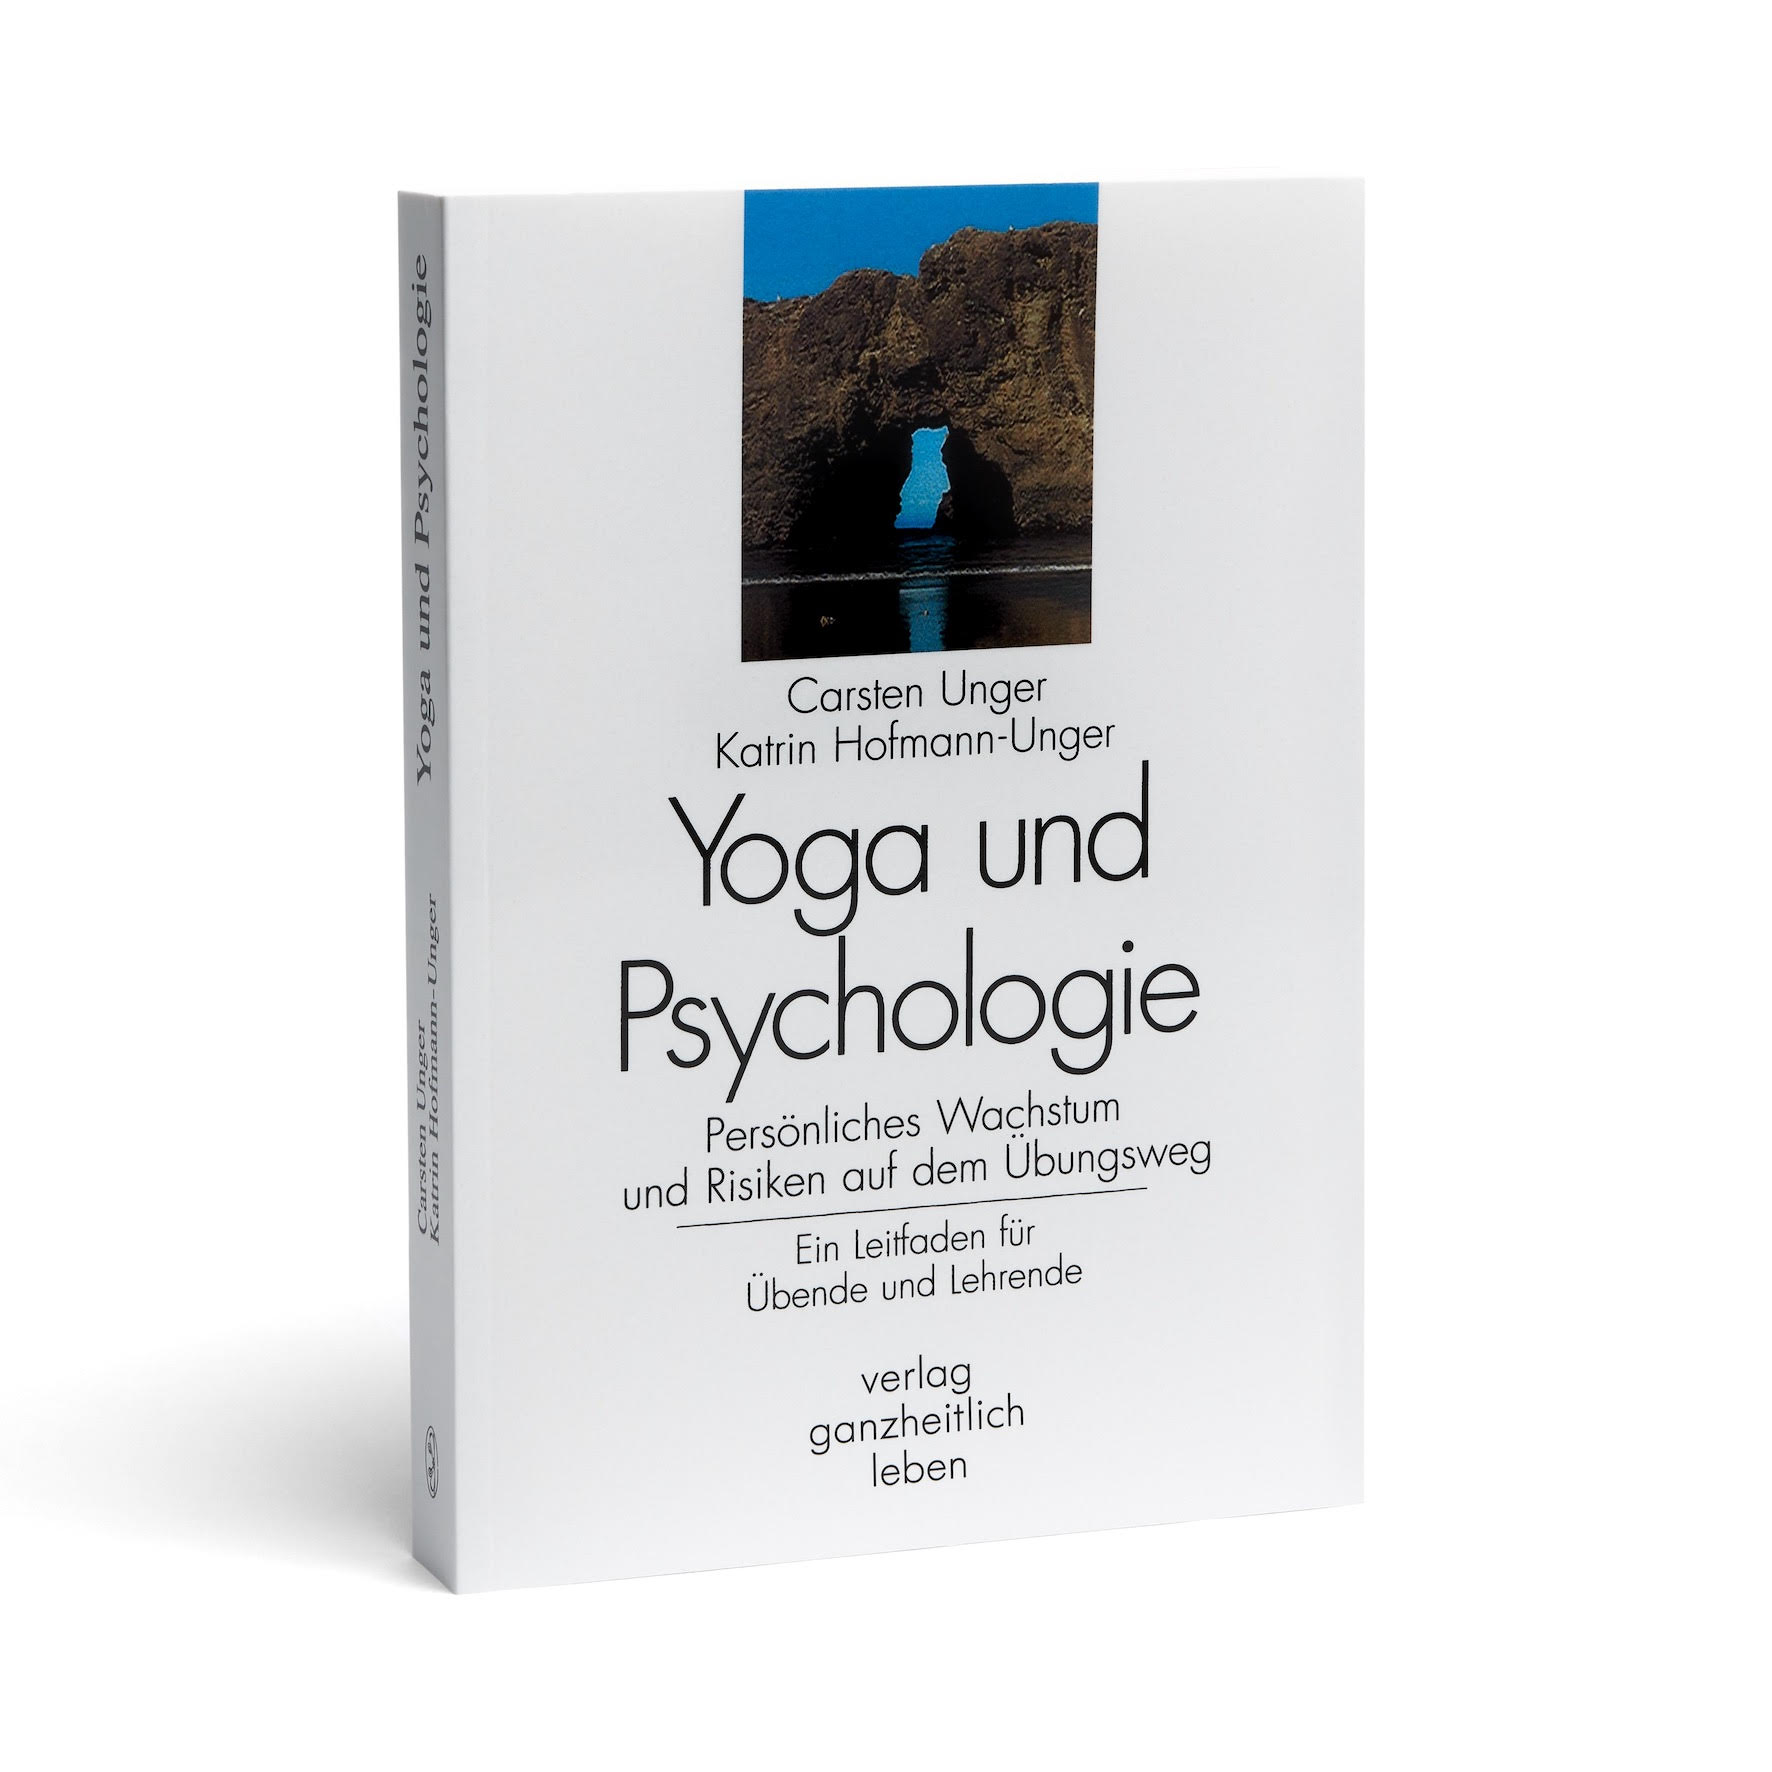 Buchcover: "Yoga und Psychologie" von Carsten Unger und Katrin Hofmann-Unger